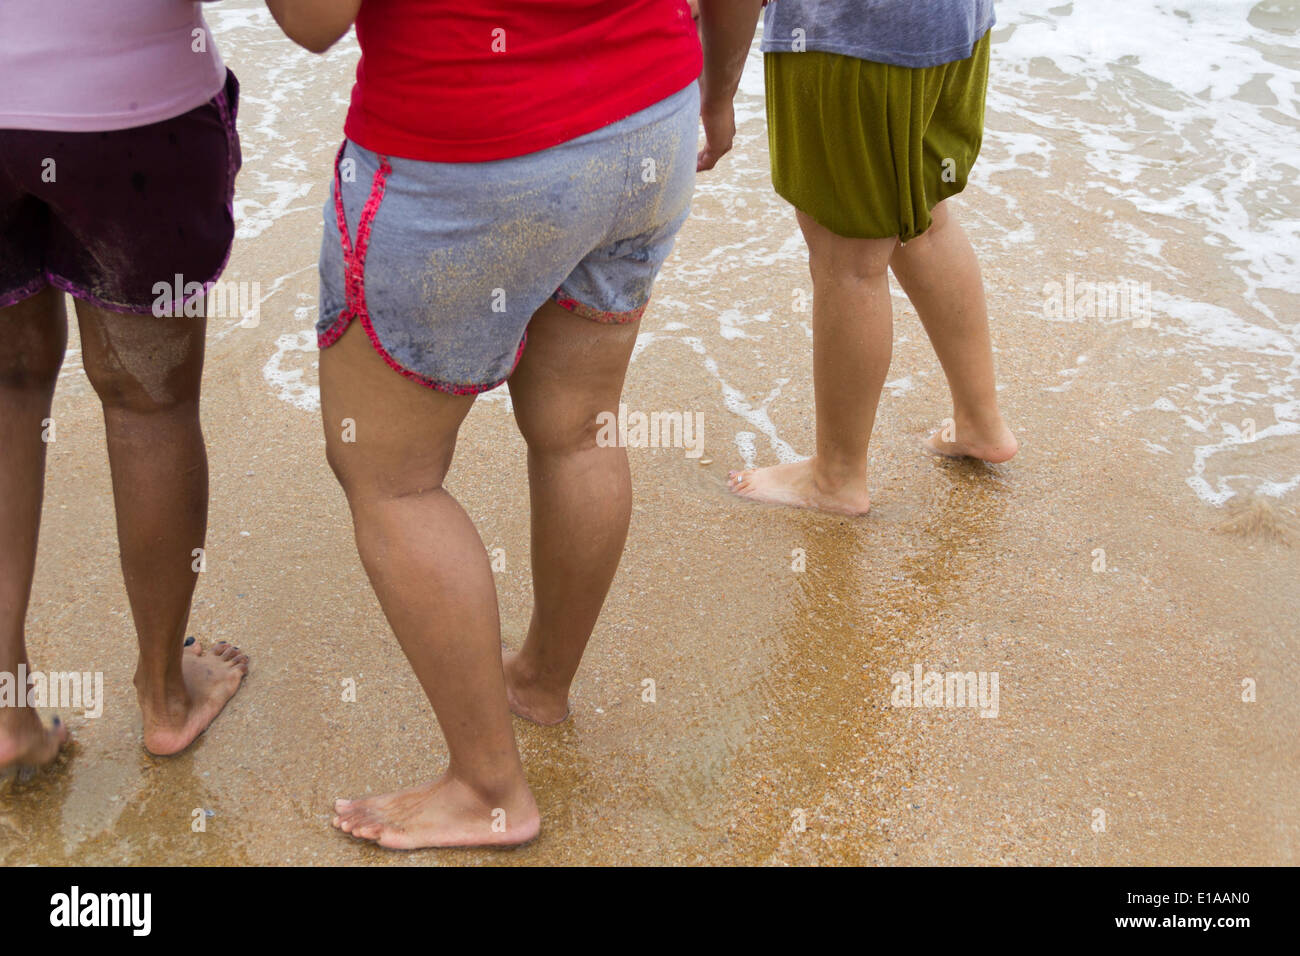 3 dames à une plage, en short, avec l'eau à quelques mètres de leurs pieds. L'eau s'estompe, et a laissé des traces Banque D'Images